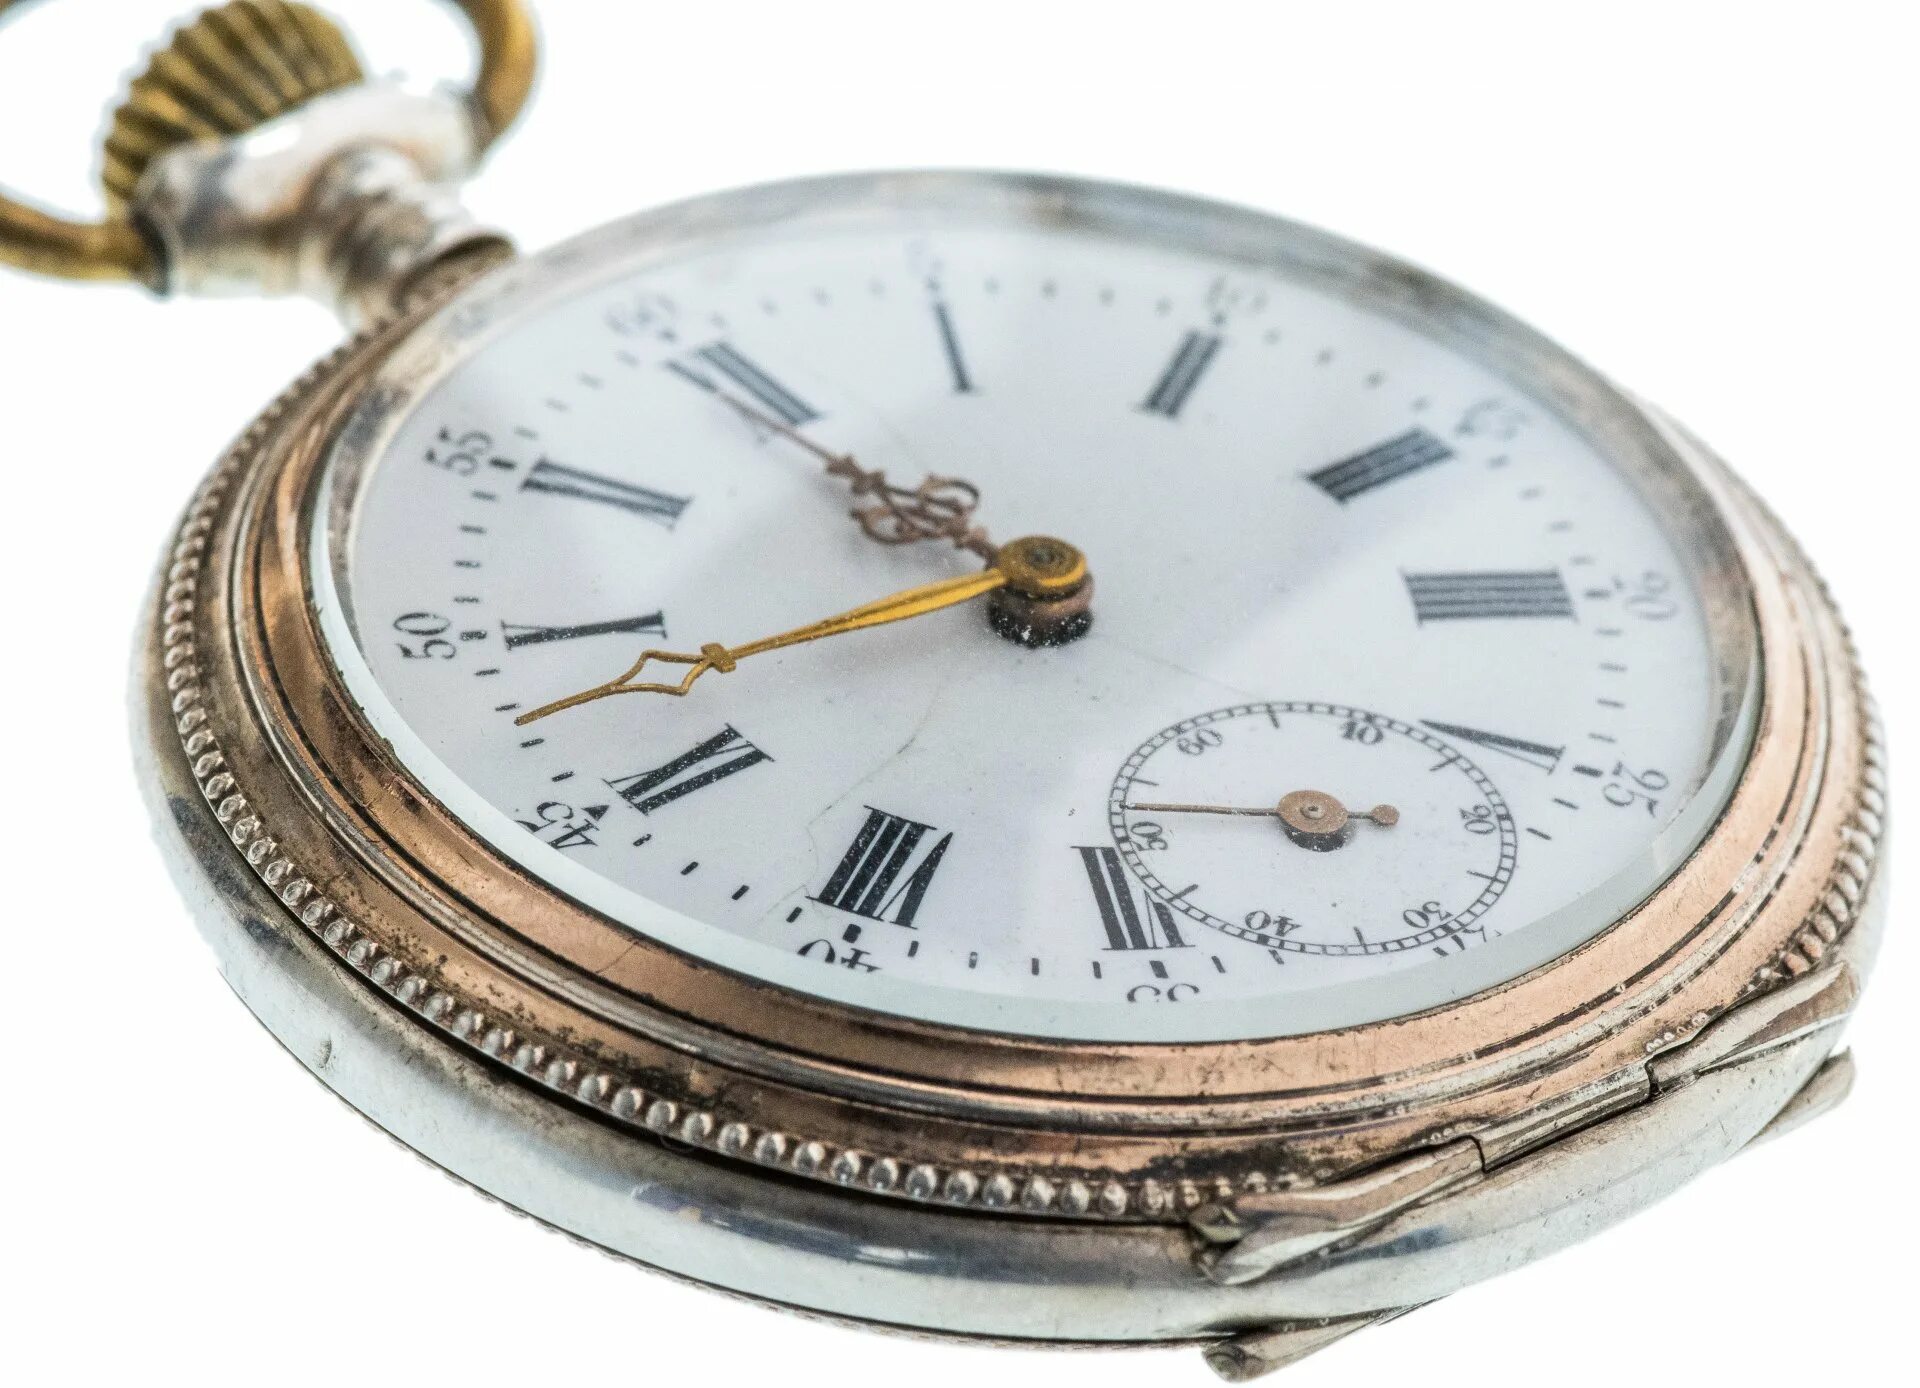 Карманные часы полет 2131879. Часы Брегет карманные серебряные. Galonne карманные часы. Серебряные швейцарские часы 19век BREGUST.